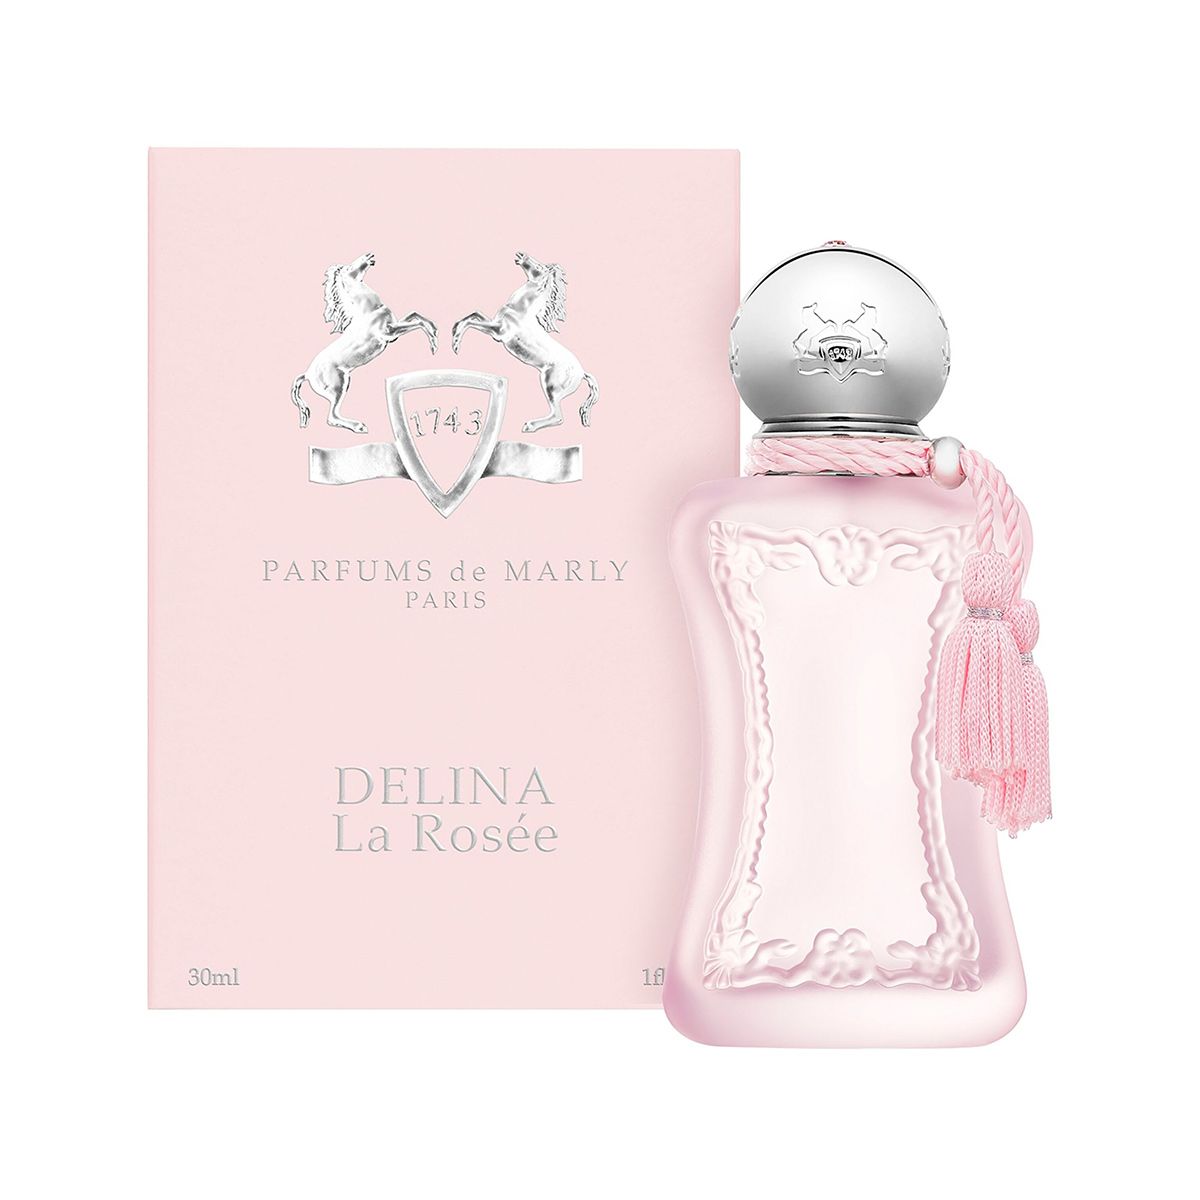  Parfums de Marly Delina La Rosée 